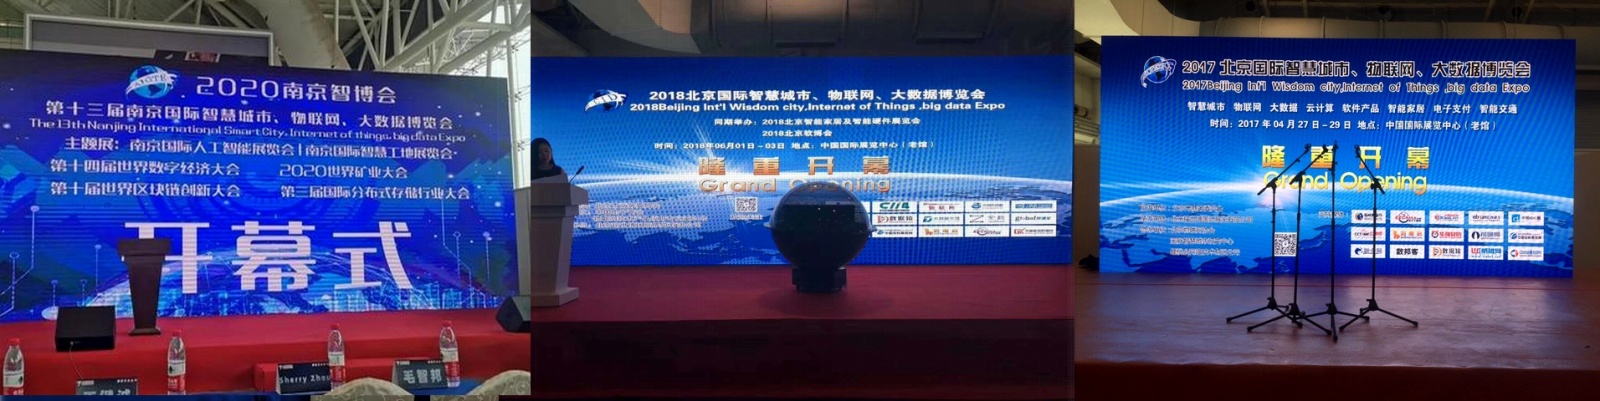 2022北京智博会AIOTE 第十五届北京智慧城市、物联网、大数据博览会